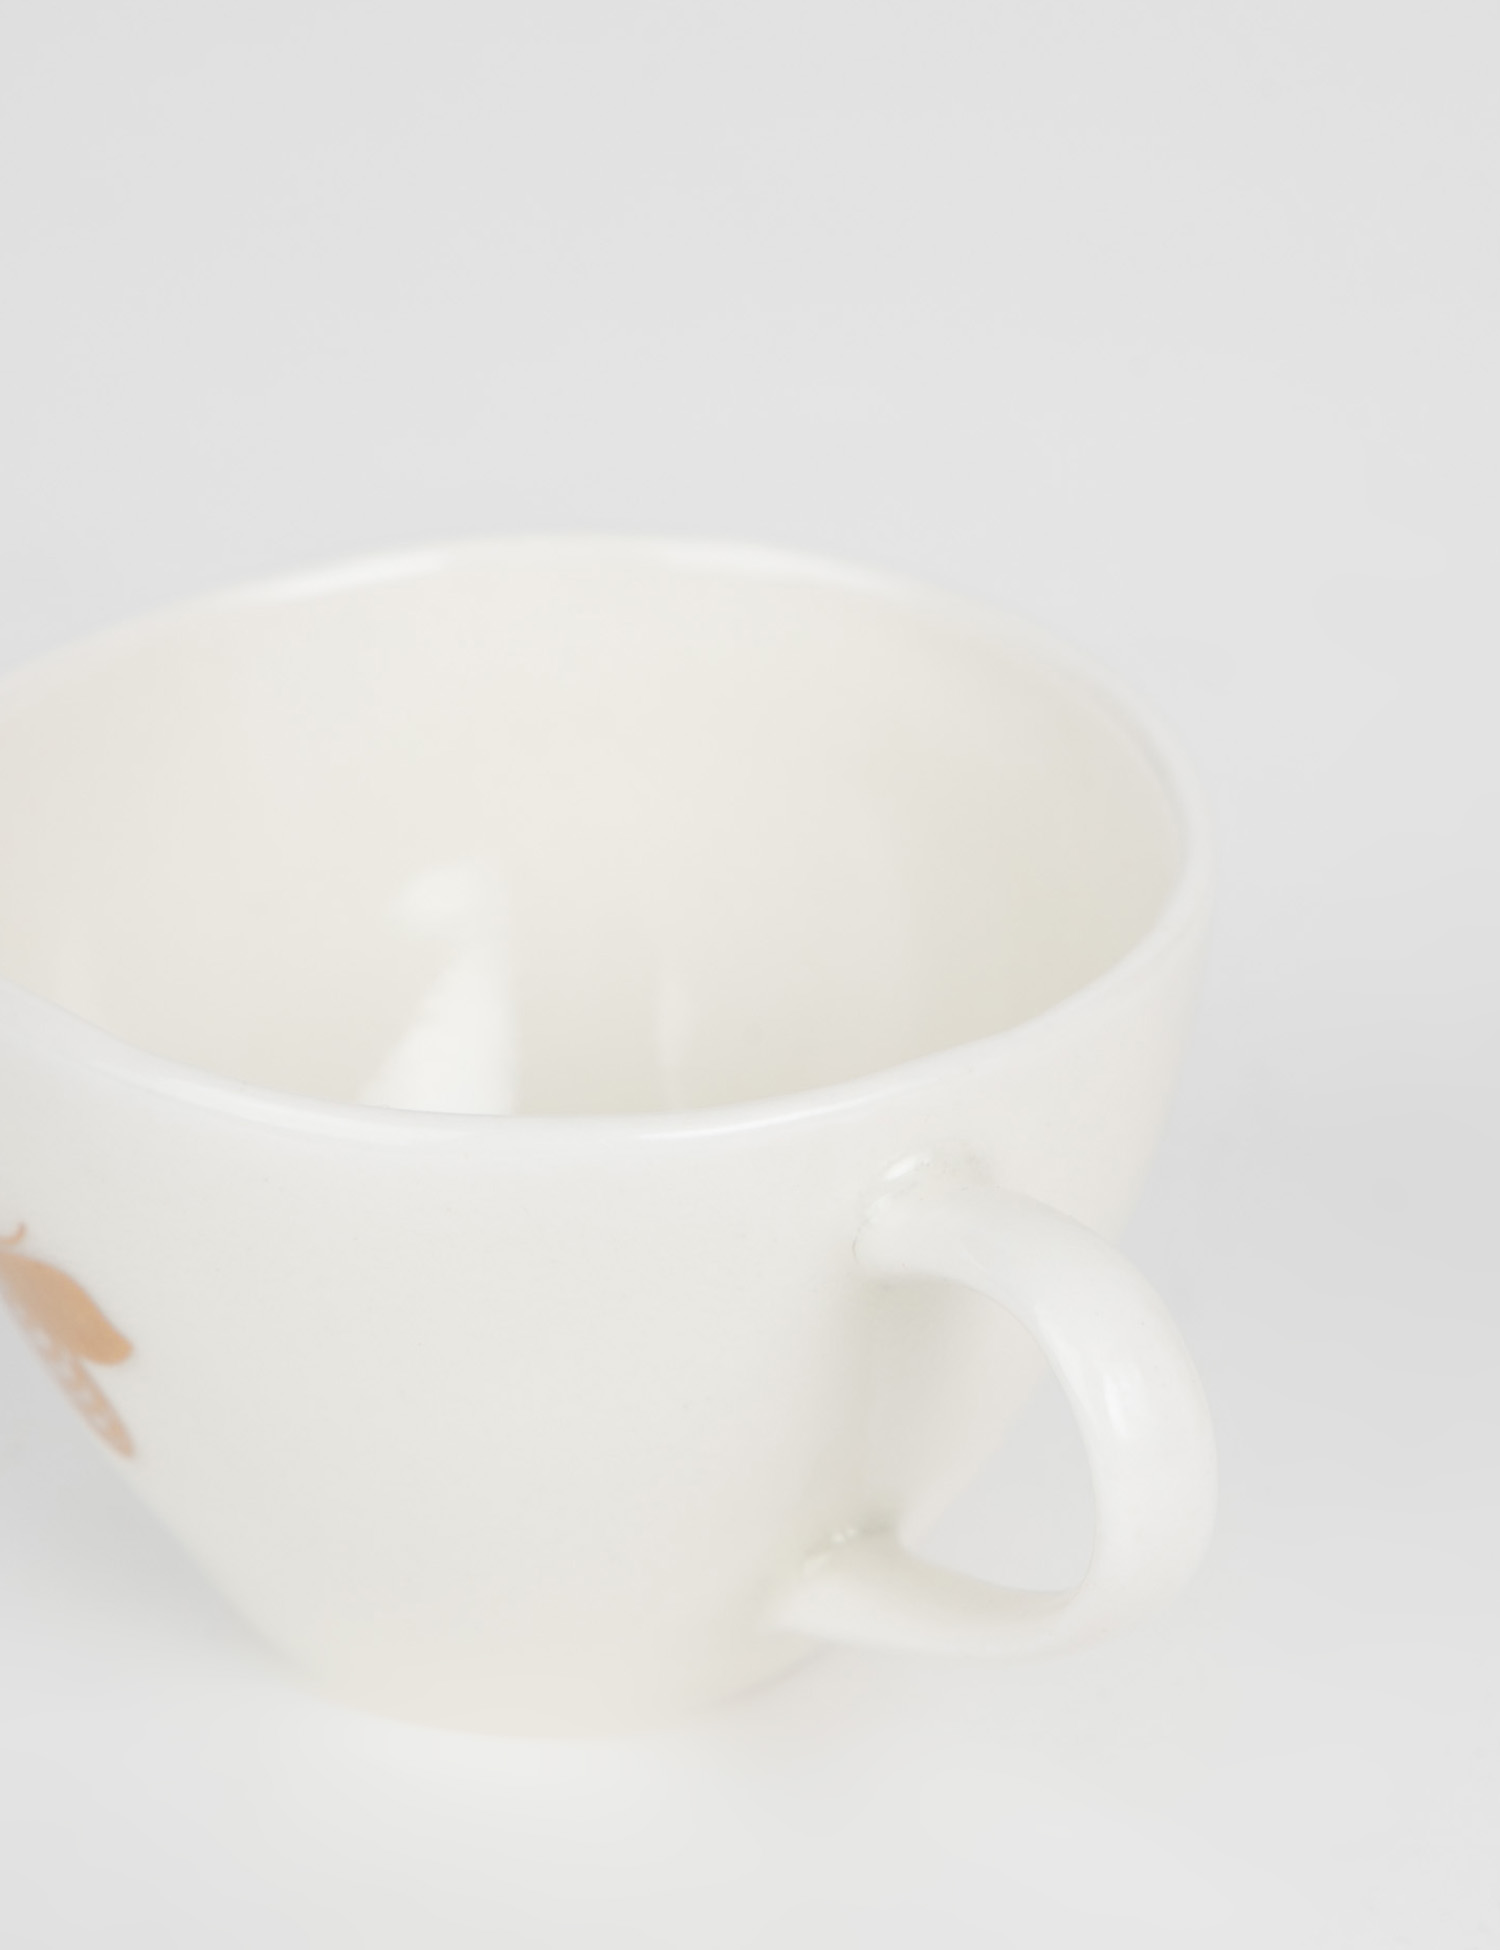 Картинка Біла керамічна чашка